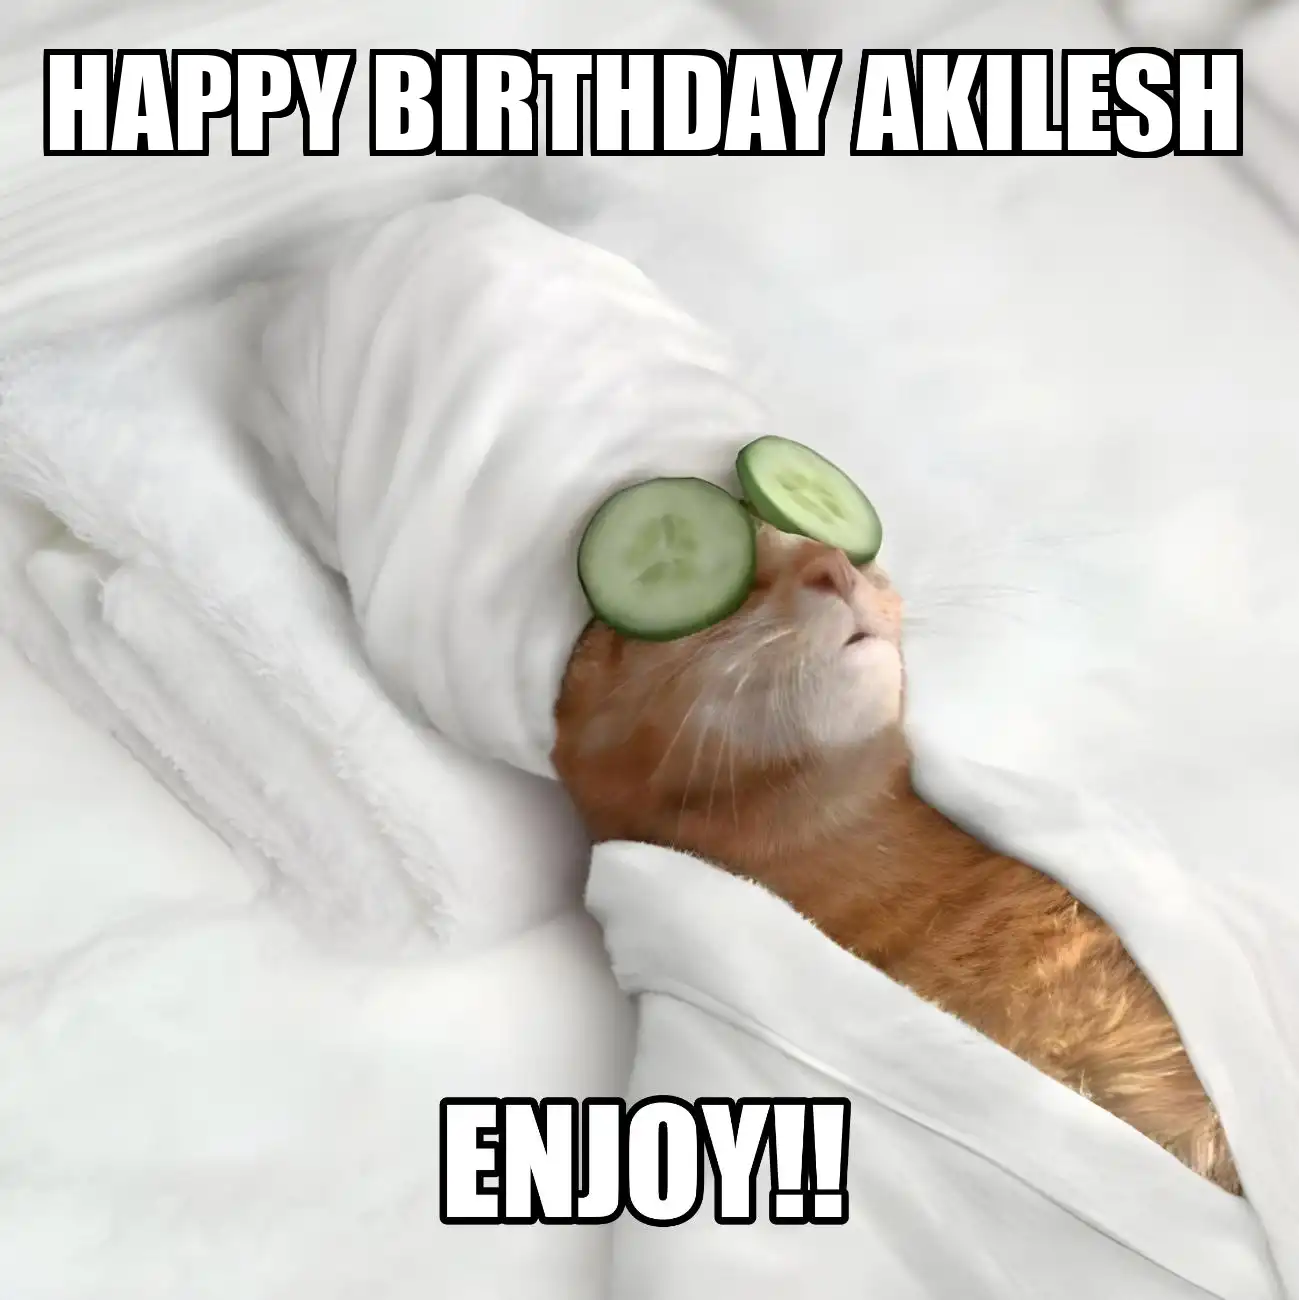 Happy Birthday Akilesh Enjoy Cat Meme